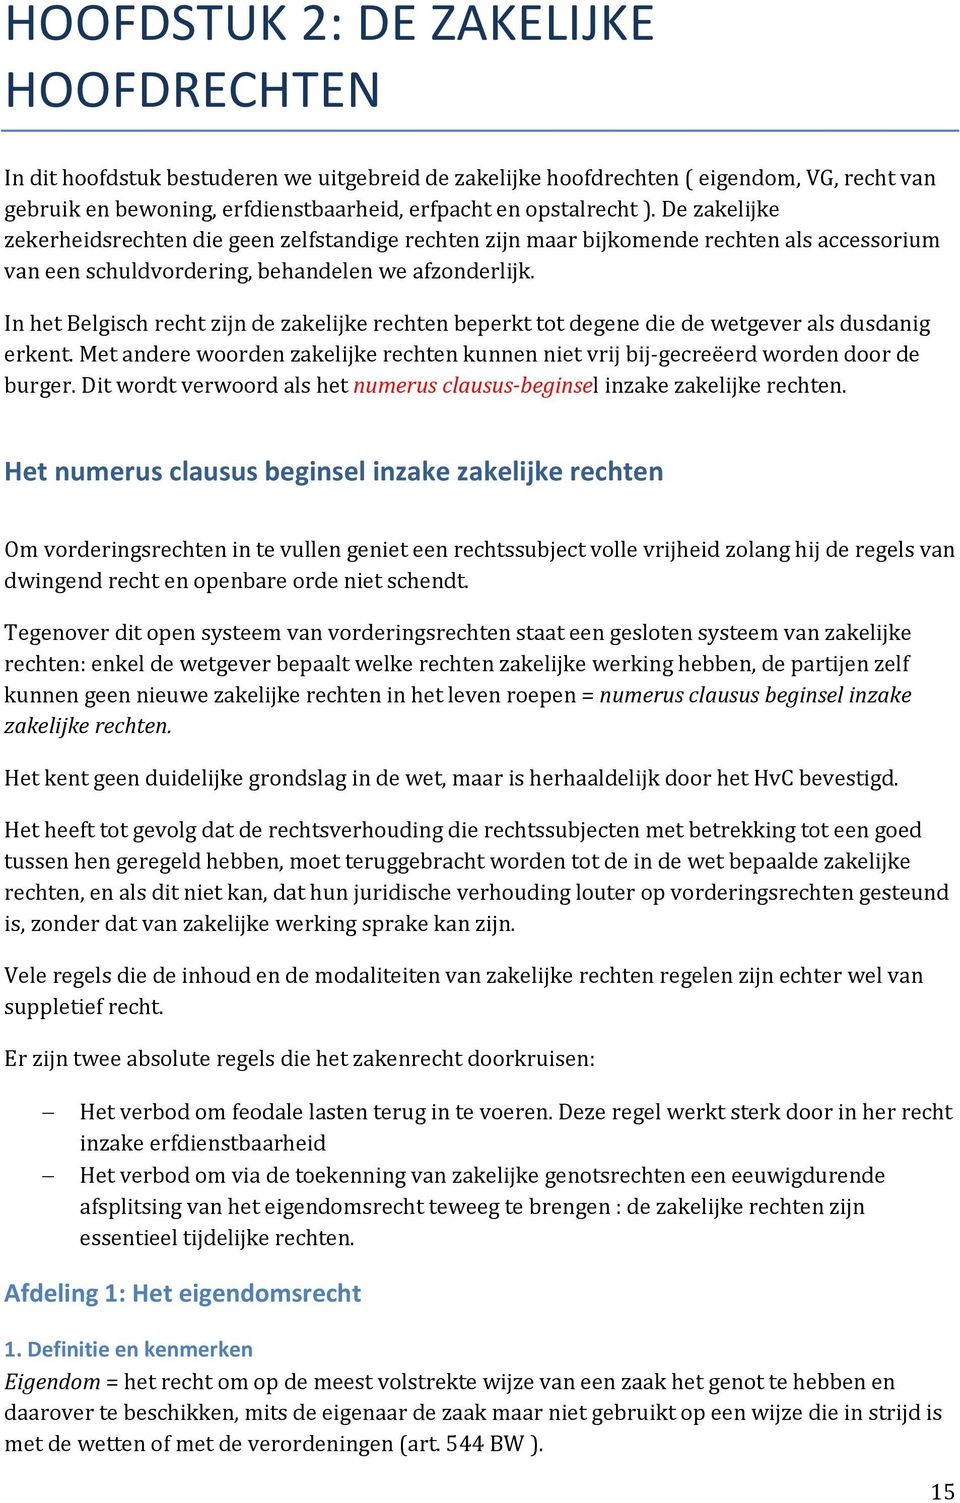 In het Belgisch recht zijn de zakelijke rechten beperkt tot degene die de wetgever als dusdanig erkent. Met andere woorden zakelijke rechten kunnen niet vrij bij-gecreëerd worden door de burger.